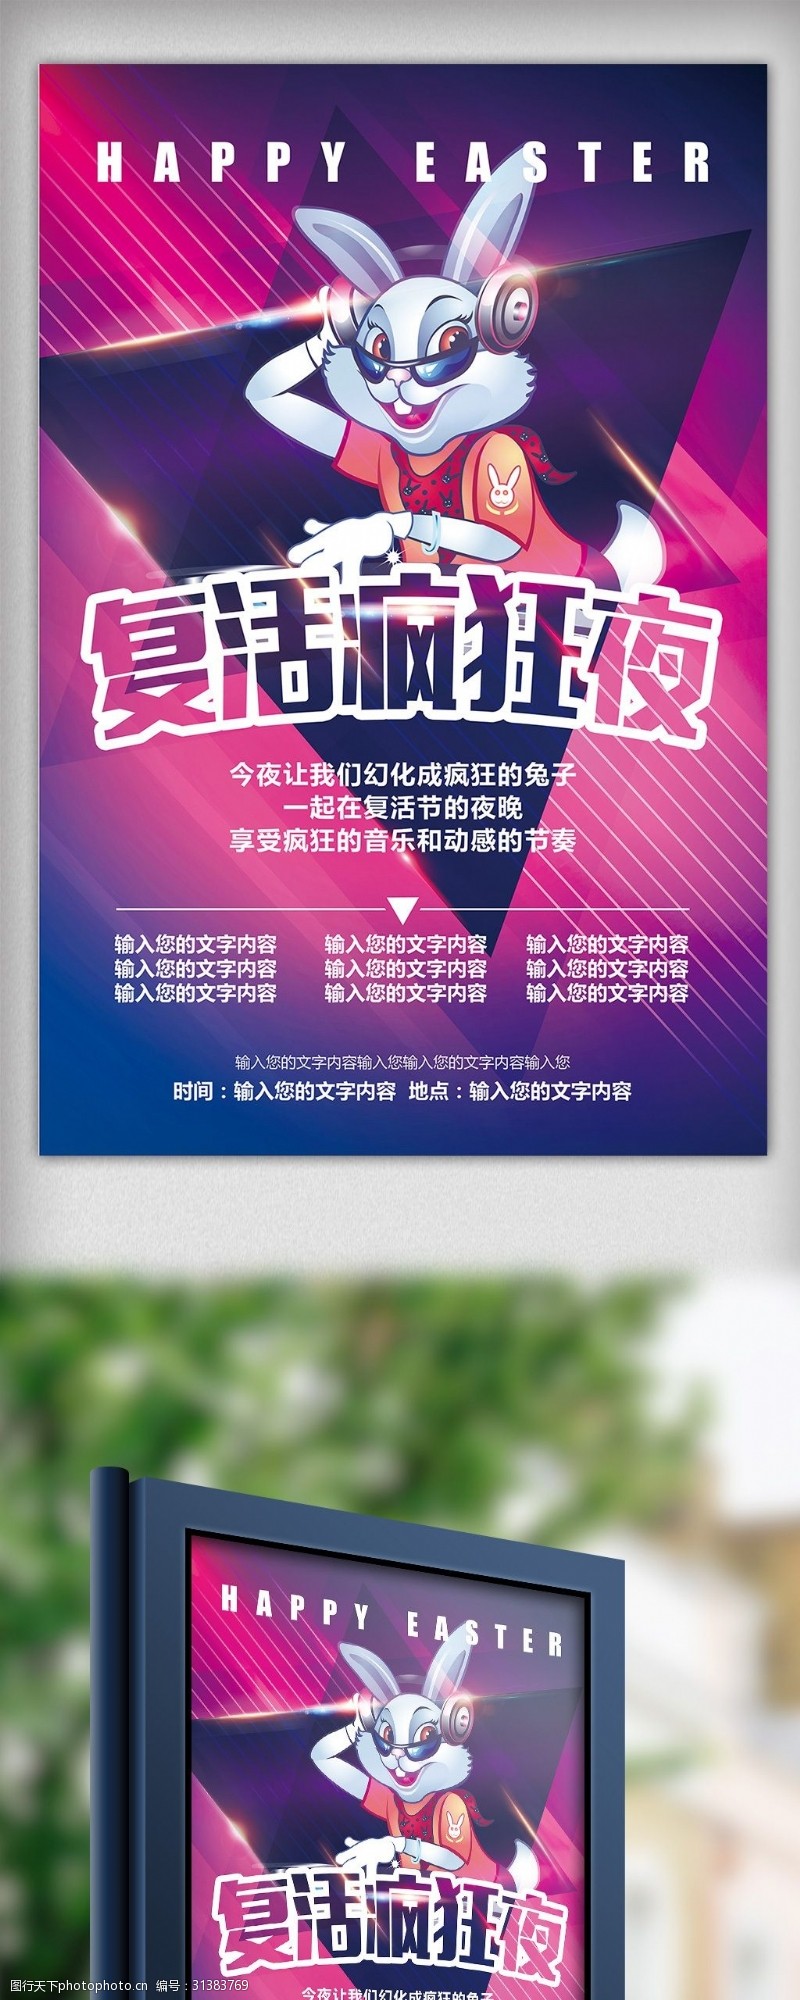 复活节狂欢炫彩复活节酒吧KTV活动海报模板